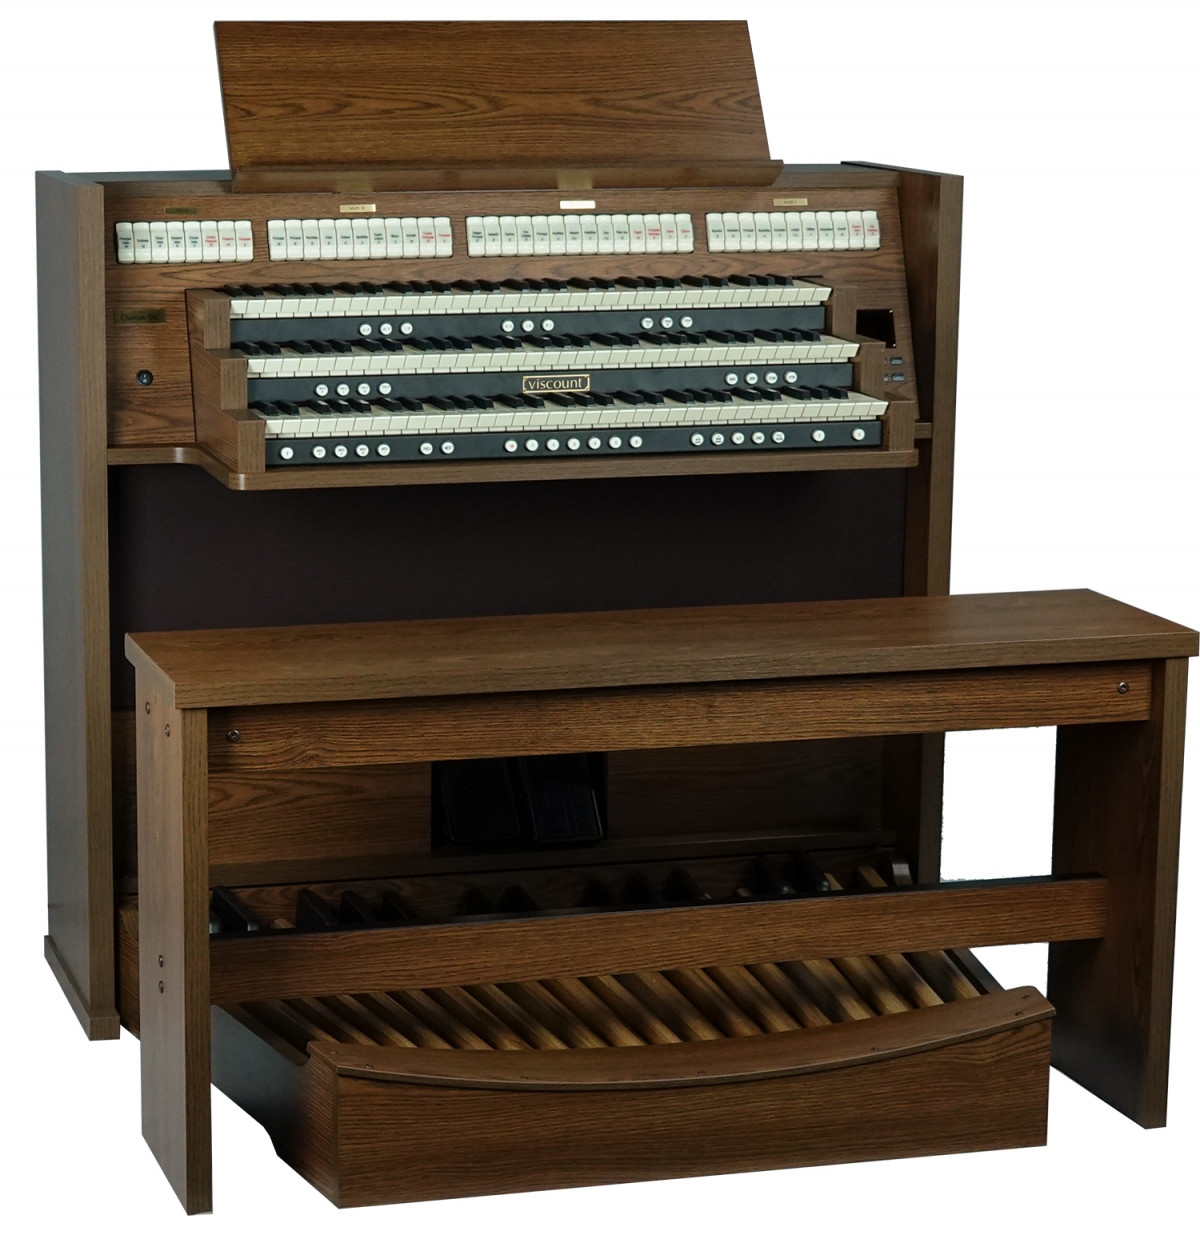 Viscount Chorum orgels - chorum-s80